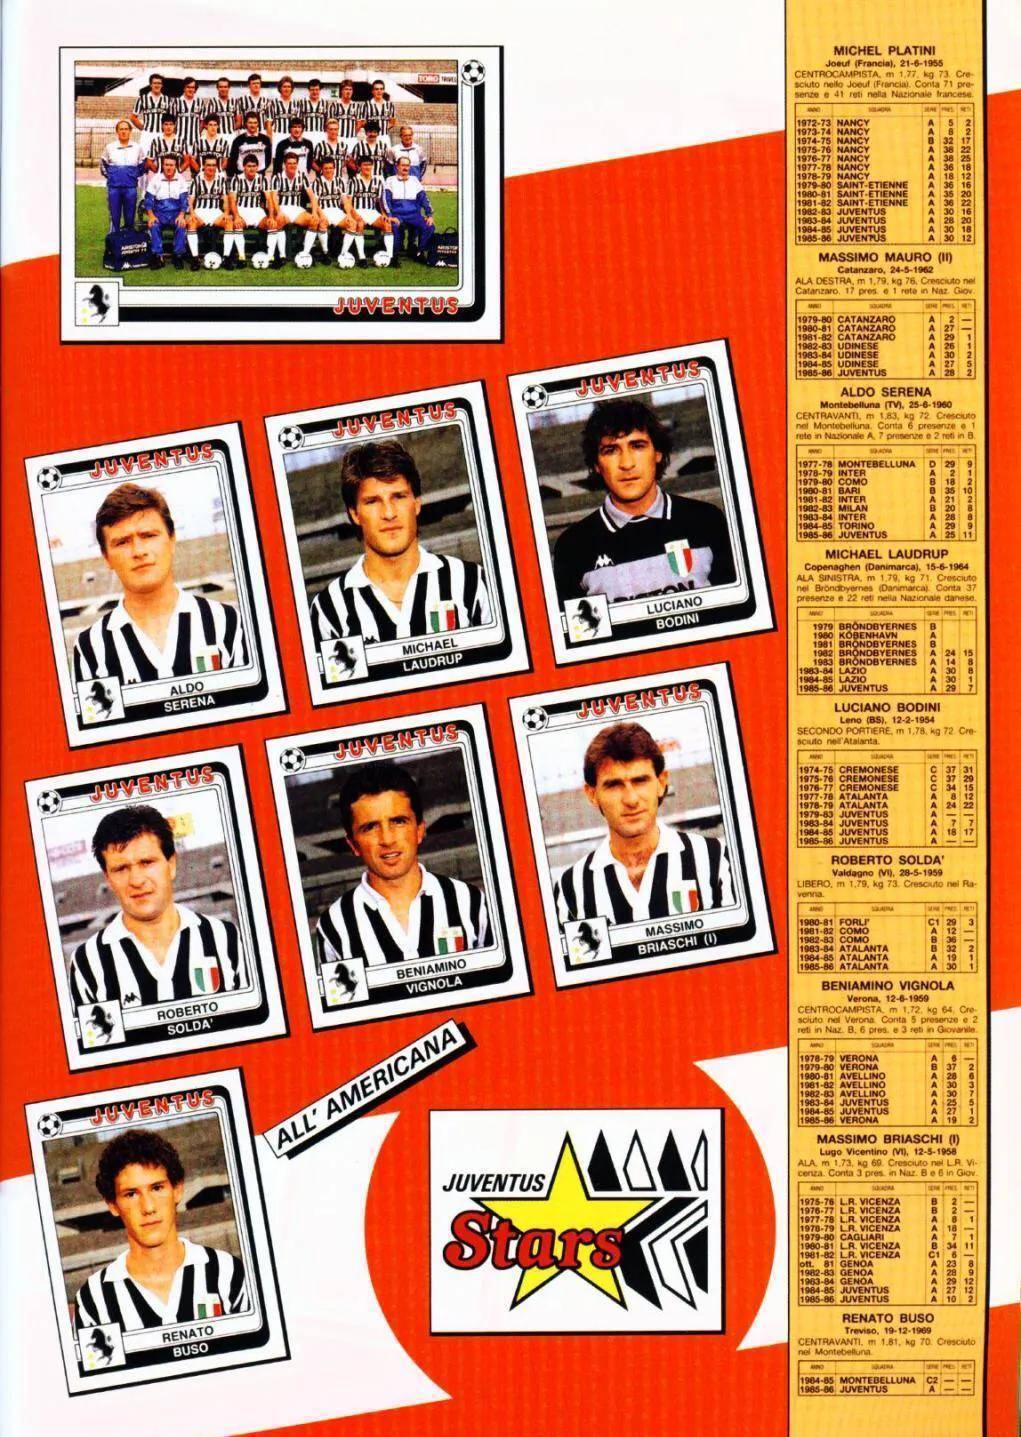 意大利甲级联赛:意大利甲级联赛重温198687赛季意大利甲级联赛尤文图斯队